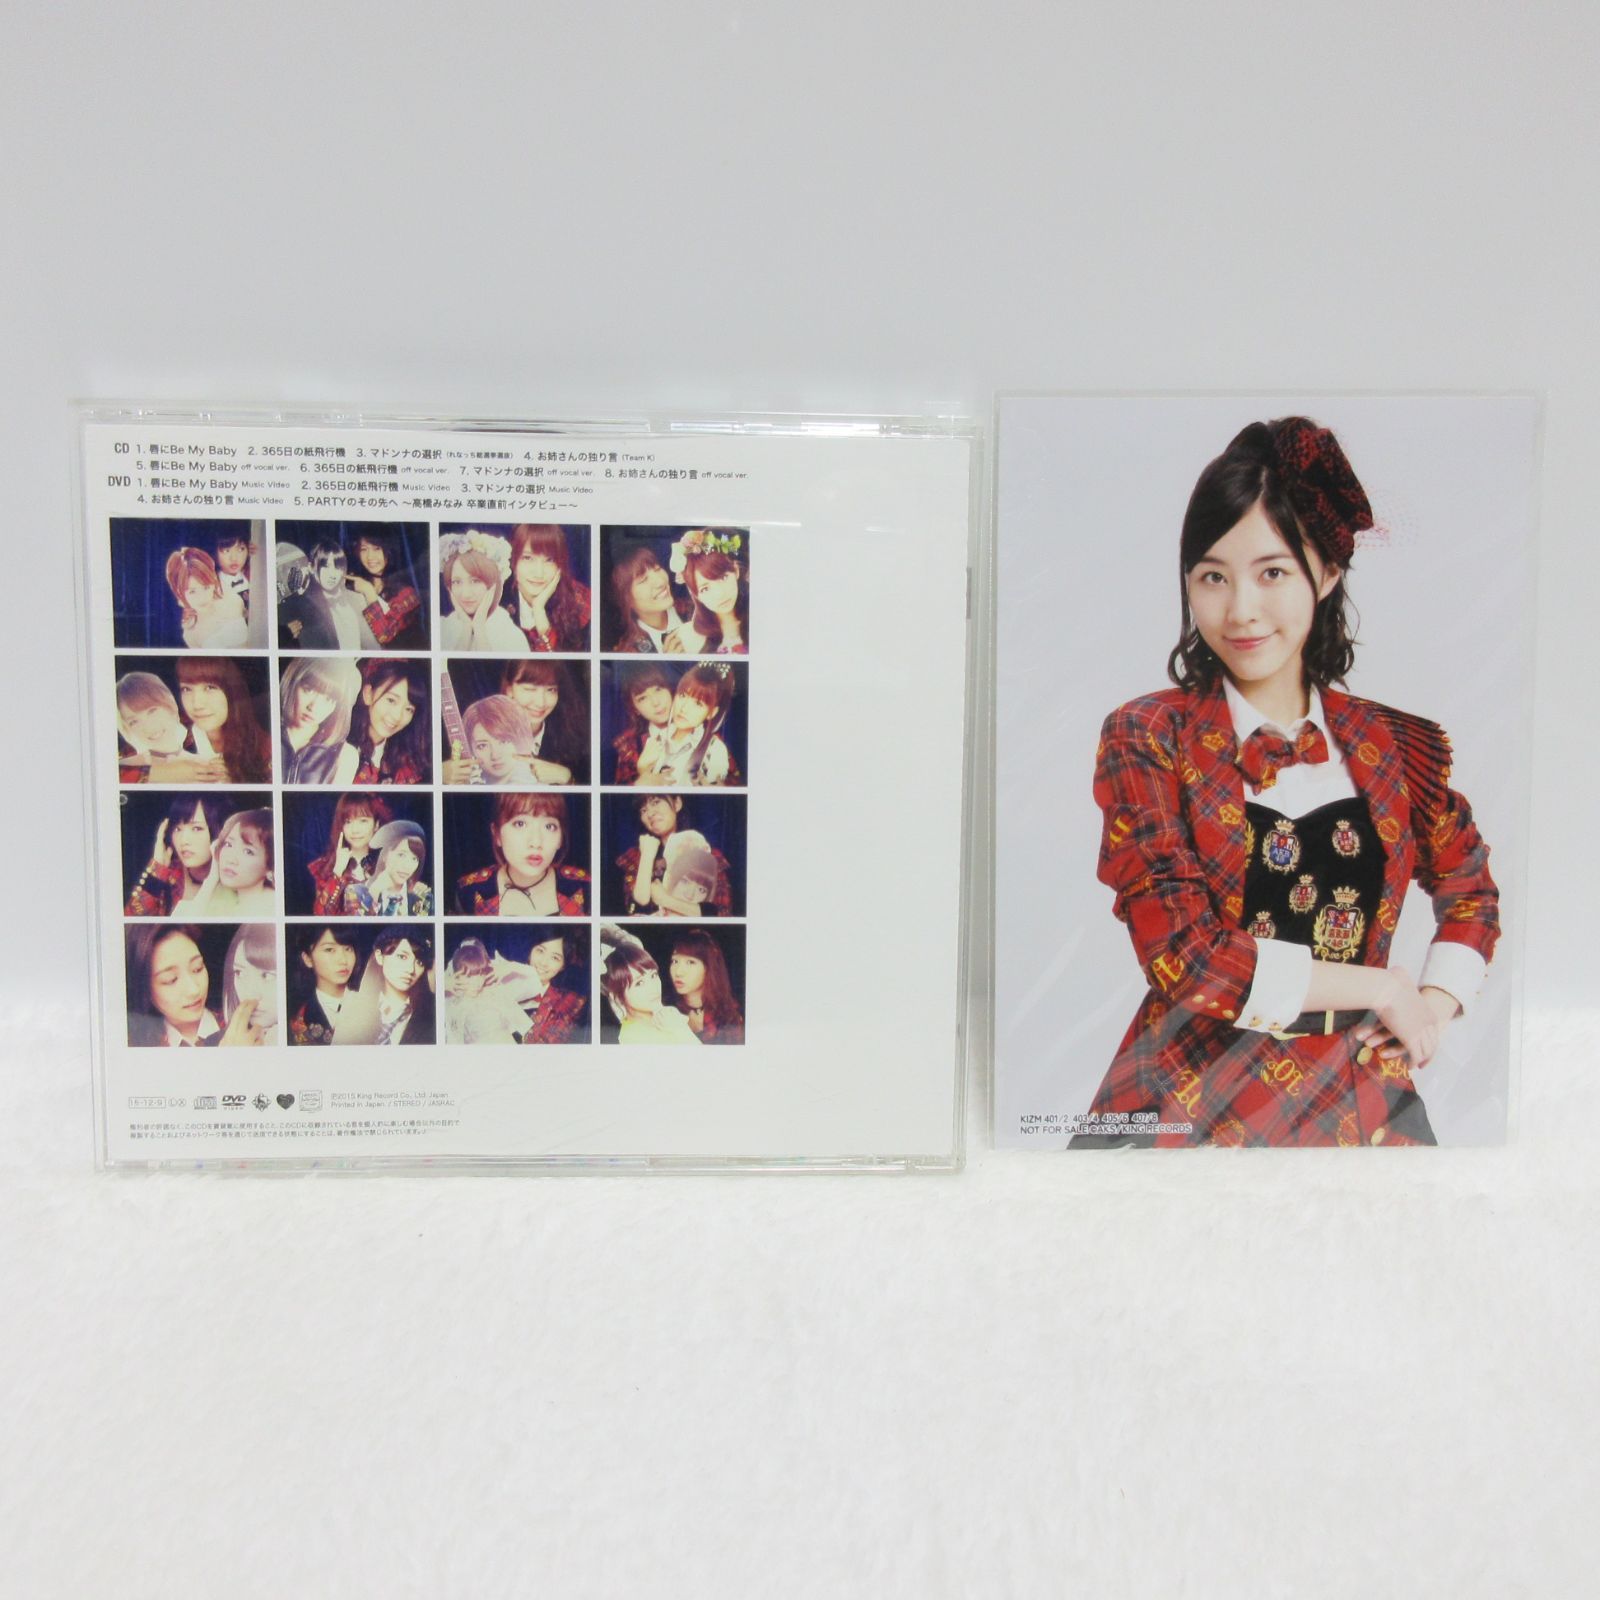 【CD/DVD】AKB48／唇にBe My Baby Type B 通常盤